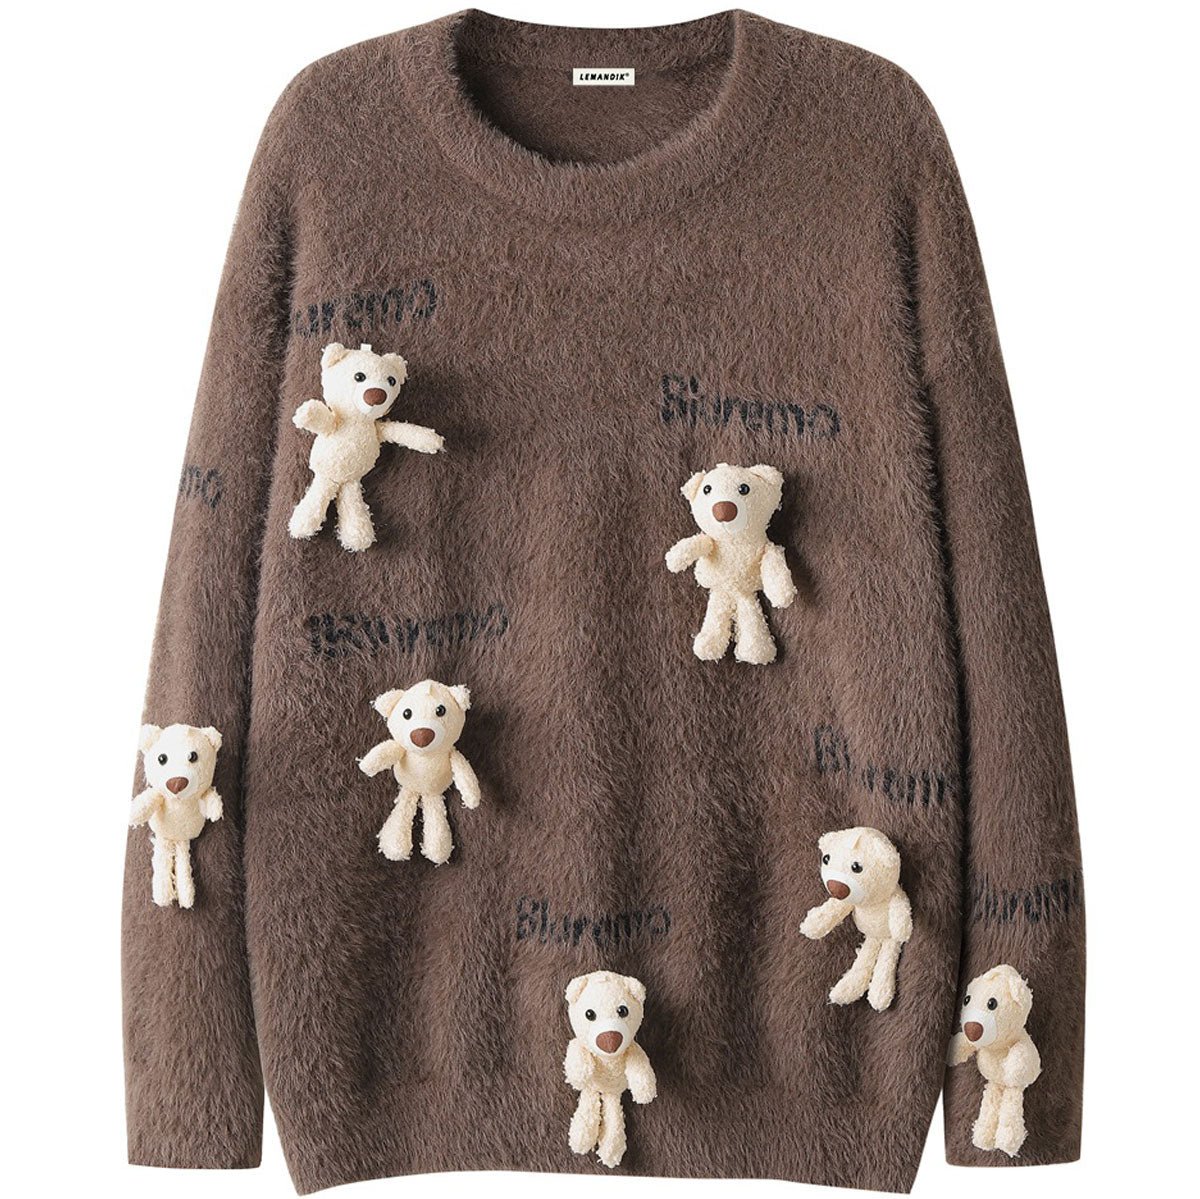 flocked bear knit sweater